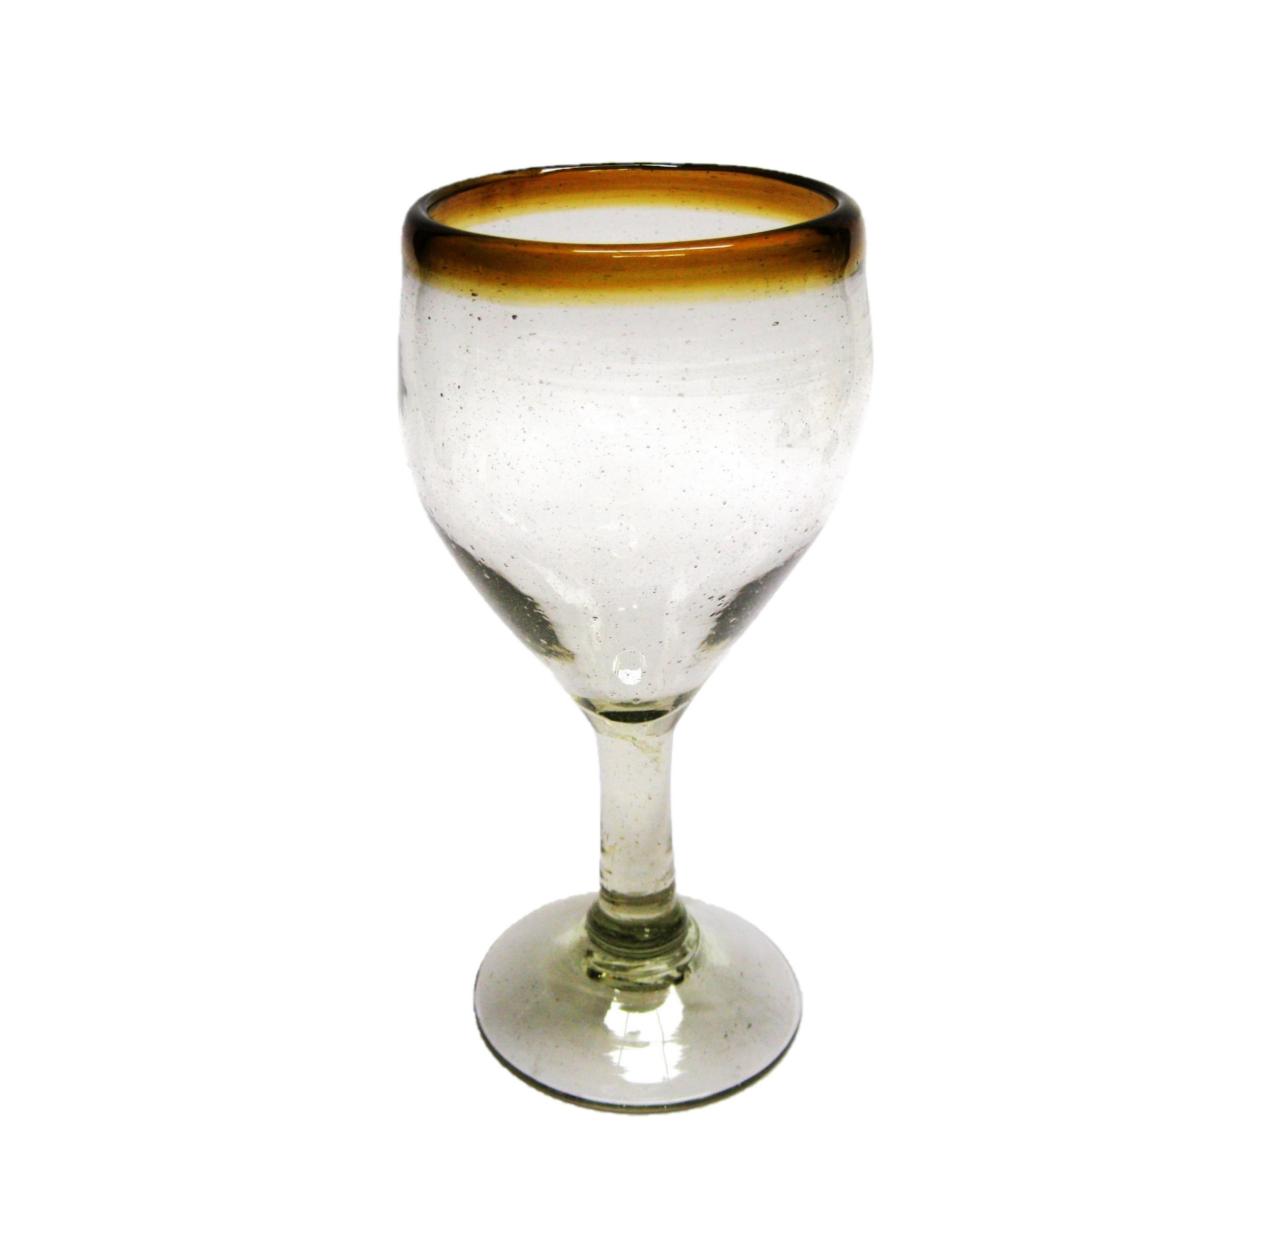 Wholesale Colored Rim Glassware / Amber Rim 7 oz Small Wine Glasses  / Capture the bouquet of fine red wine with these wine glasses bordered with a bright, amber color rim.